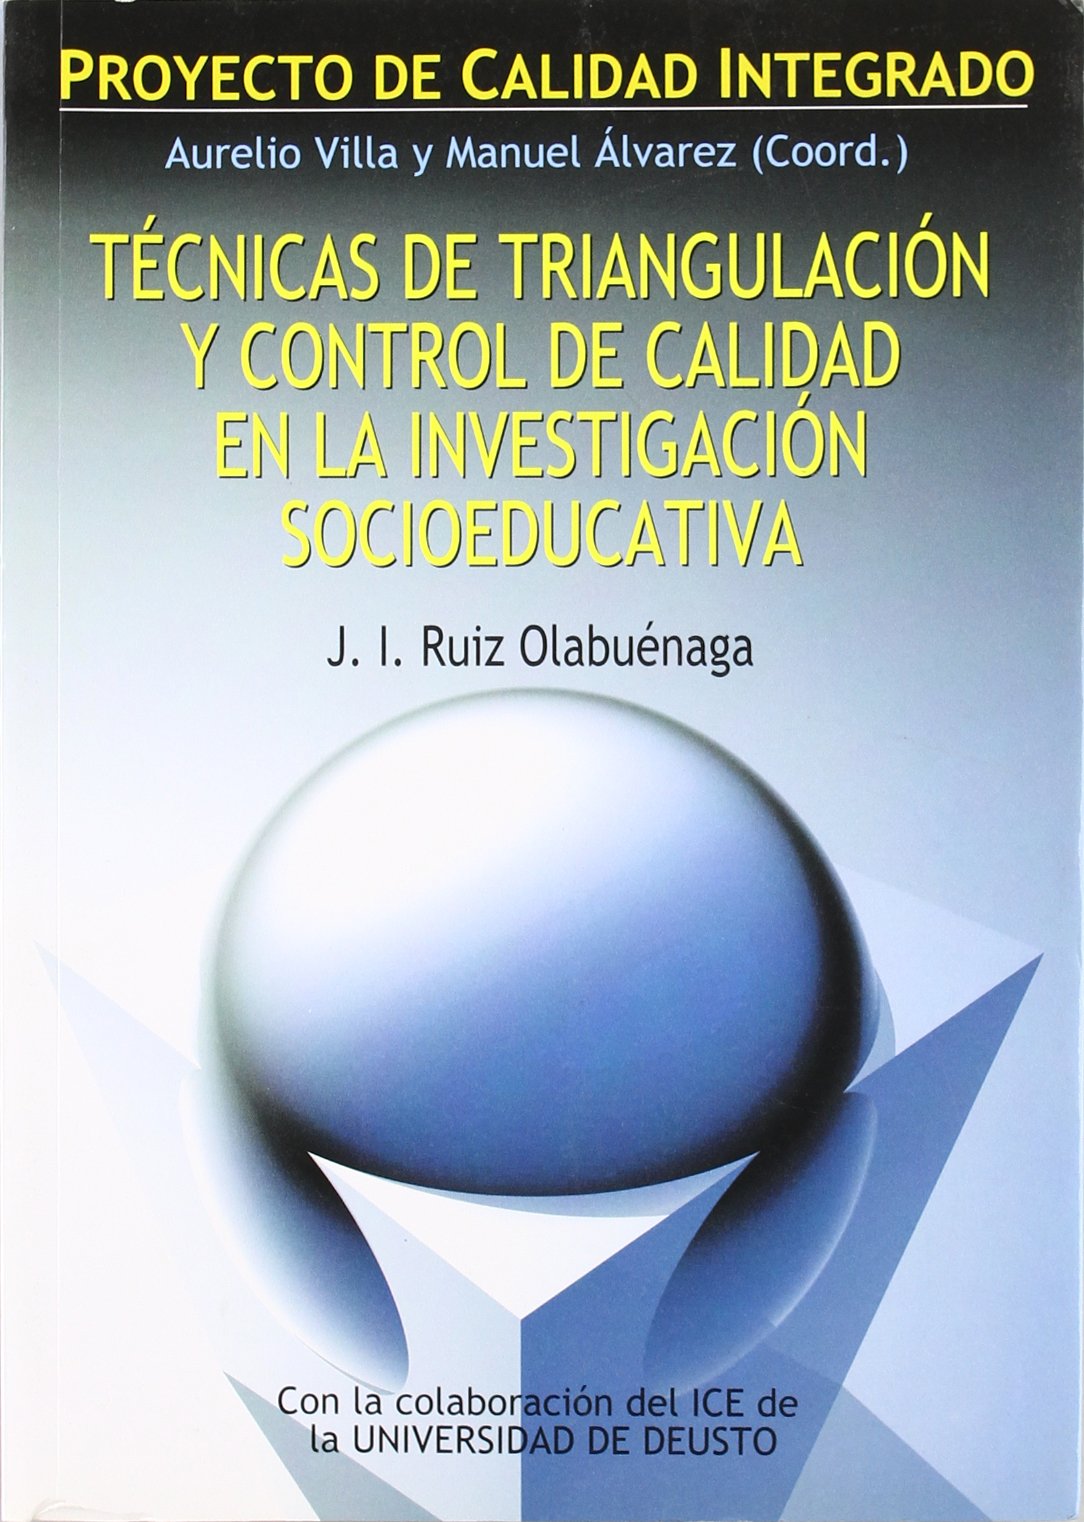 Imagen de portada del libro Tecnicas de triangulacion y control de calidad en la investigación socioeducativa